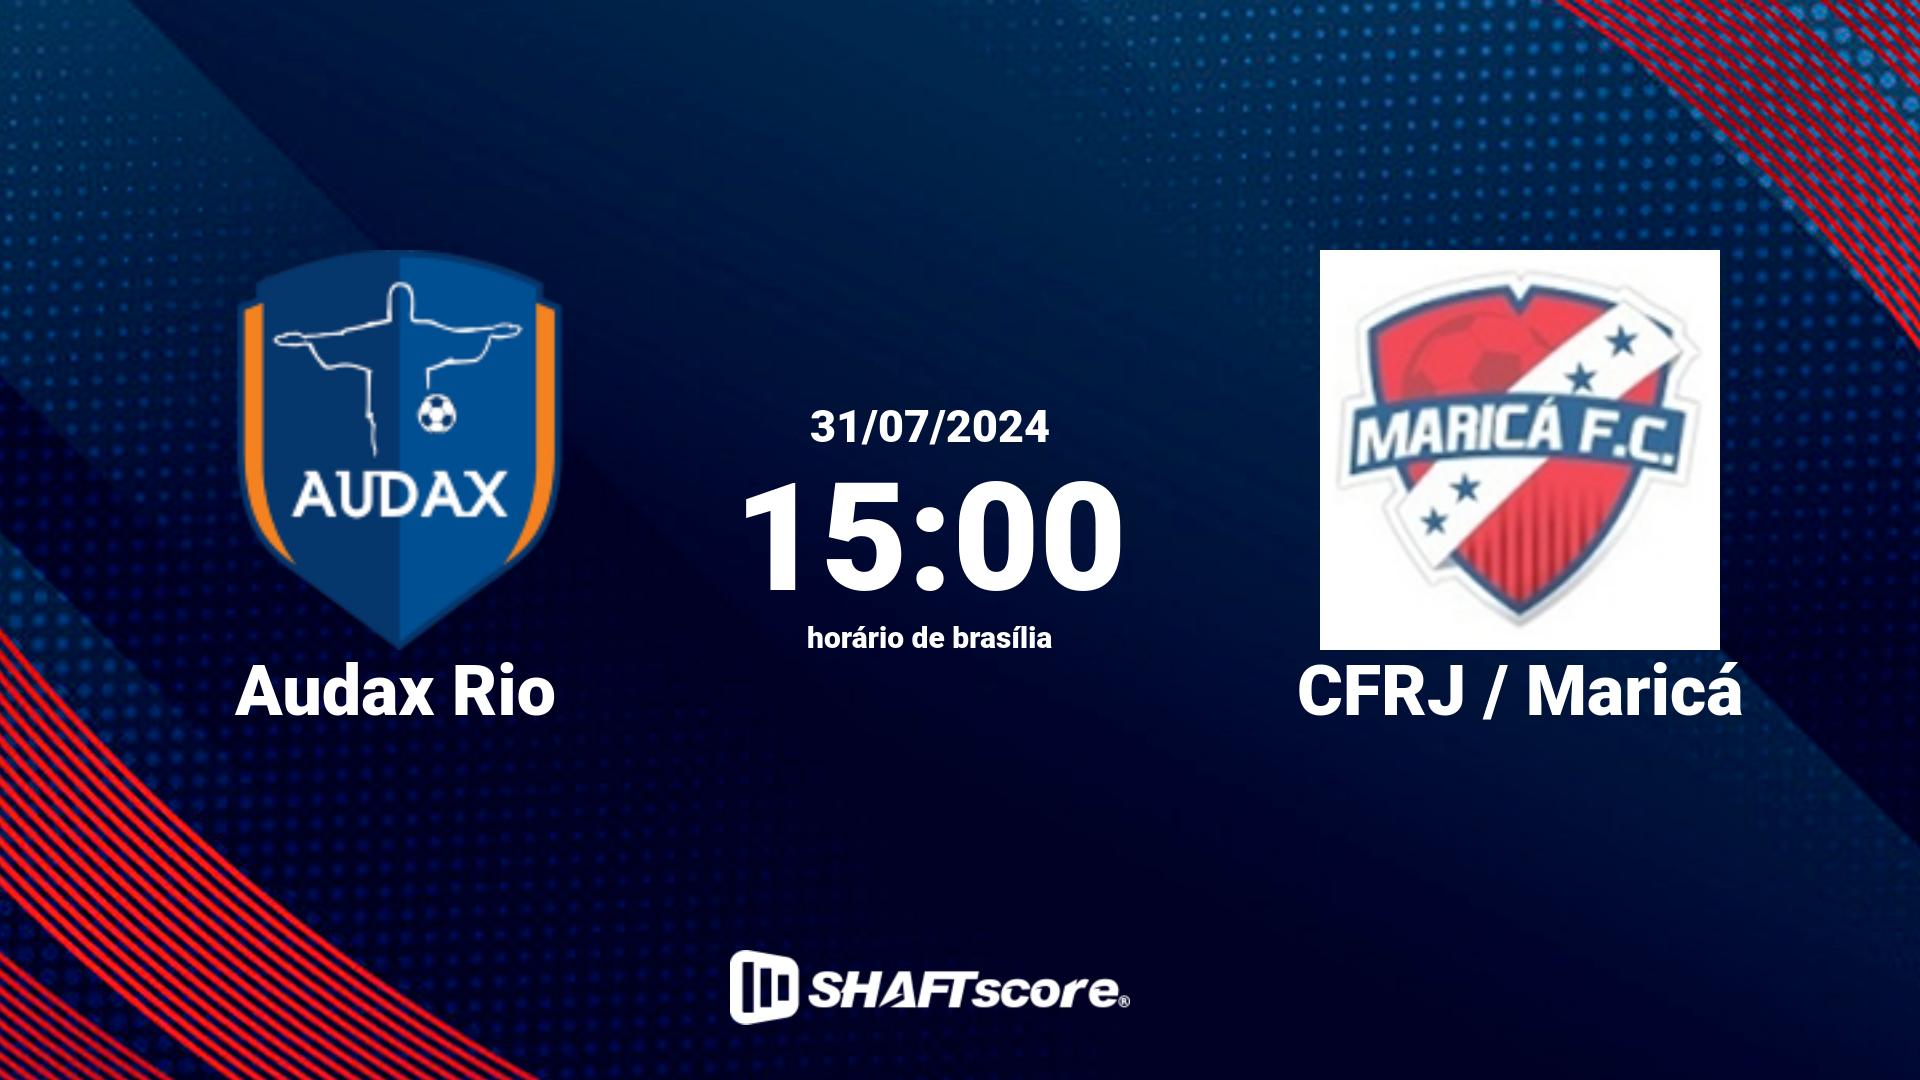 Estatísticas do jogo Audax Rio vs CFRJ / Maricá 31.07 15:00